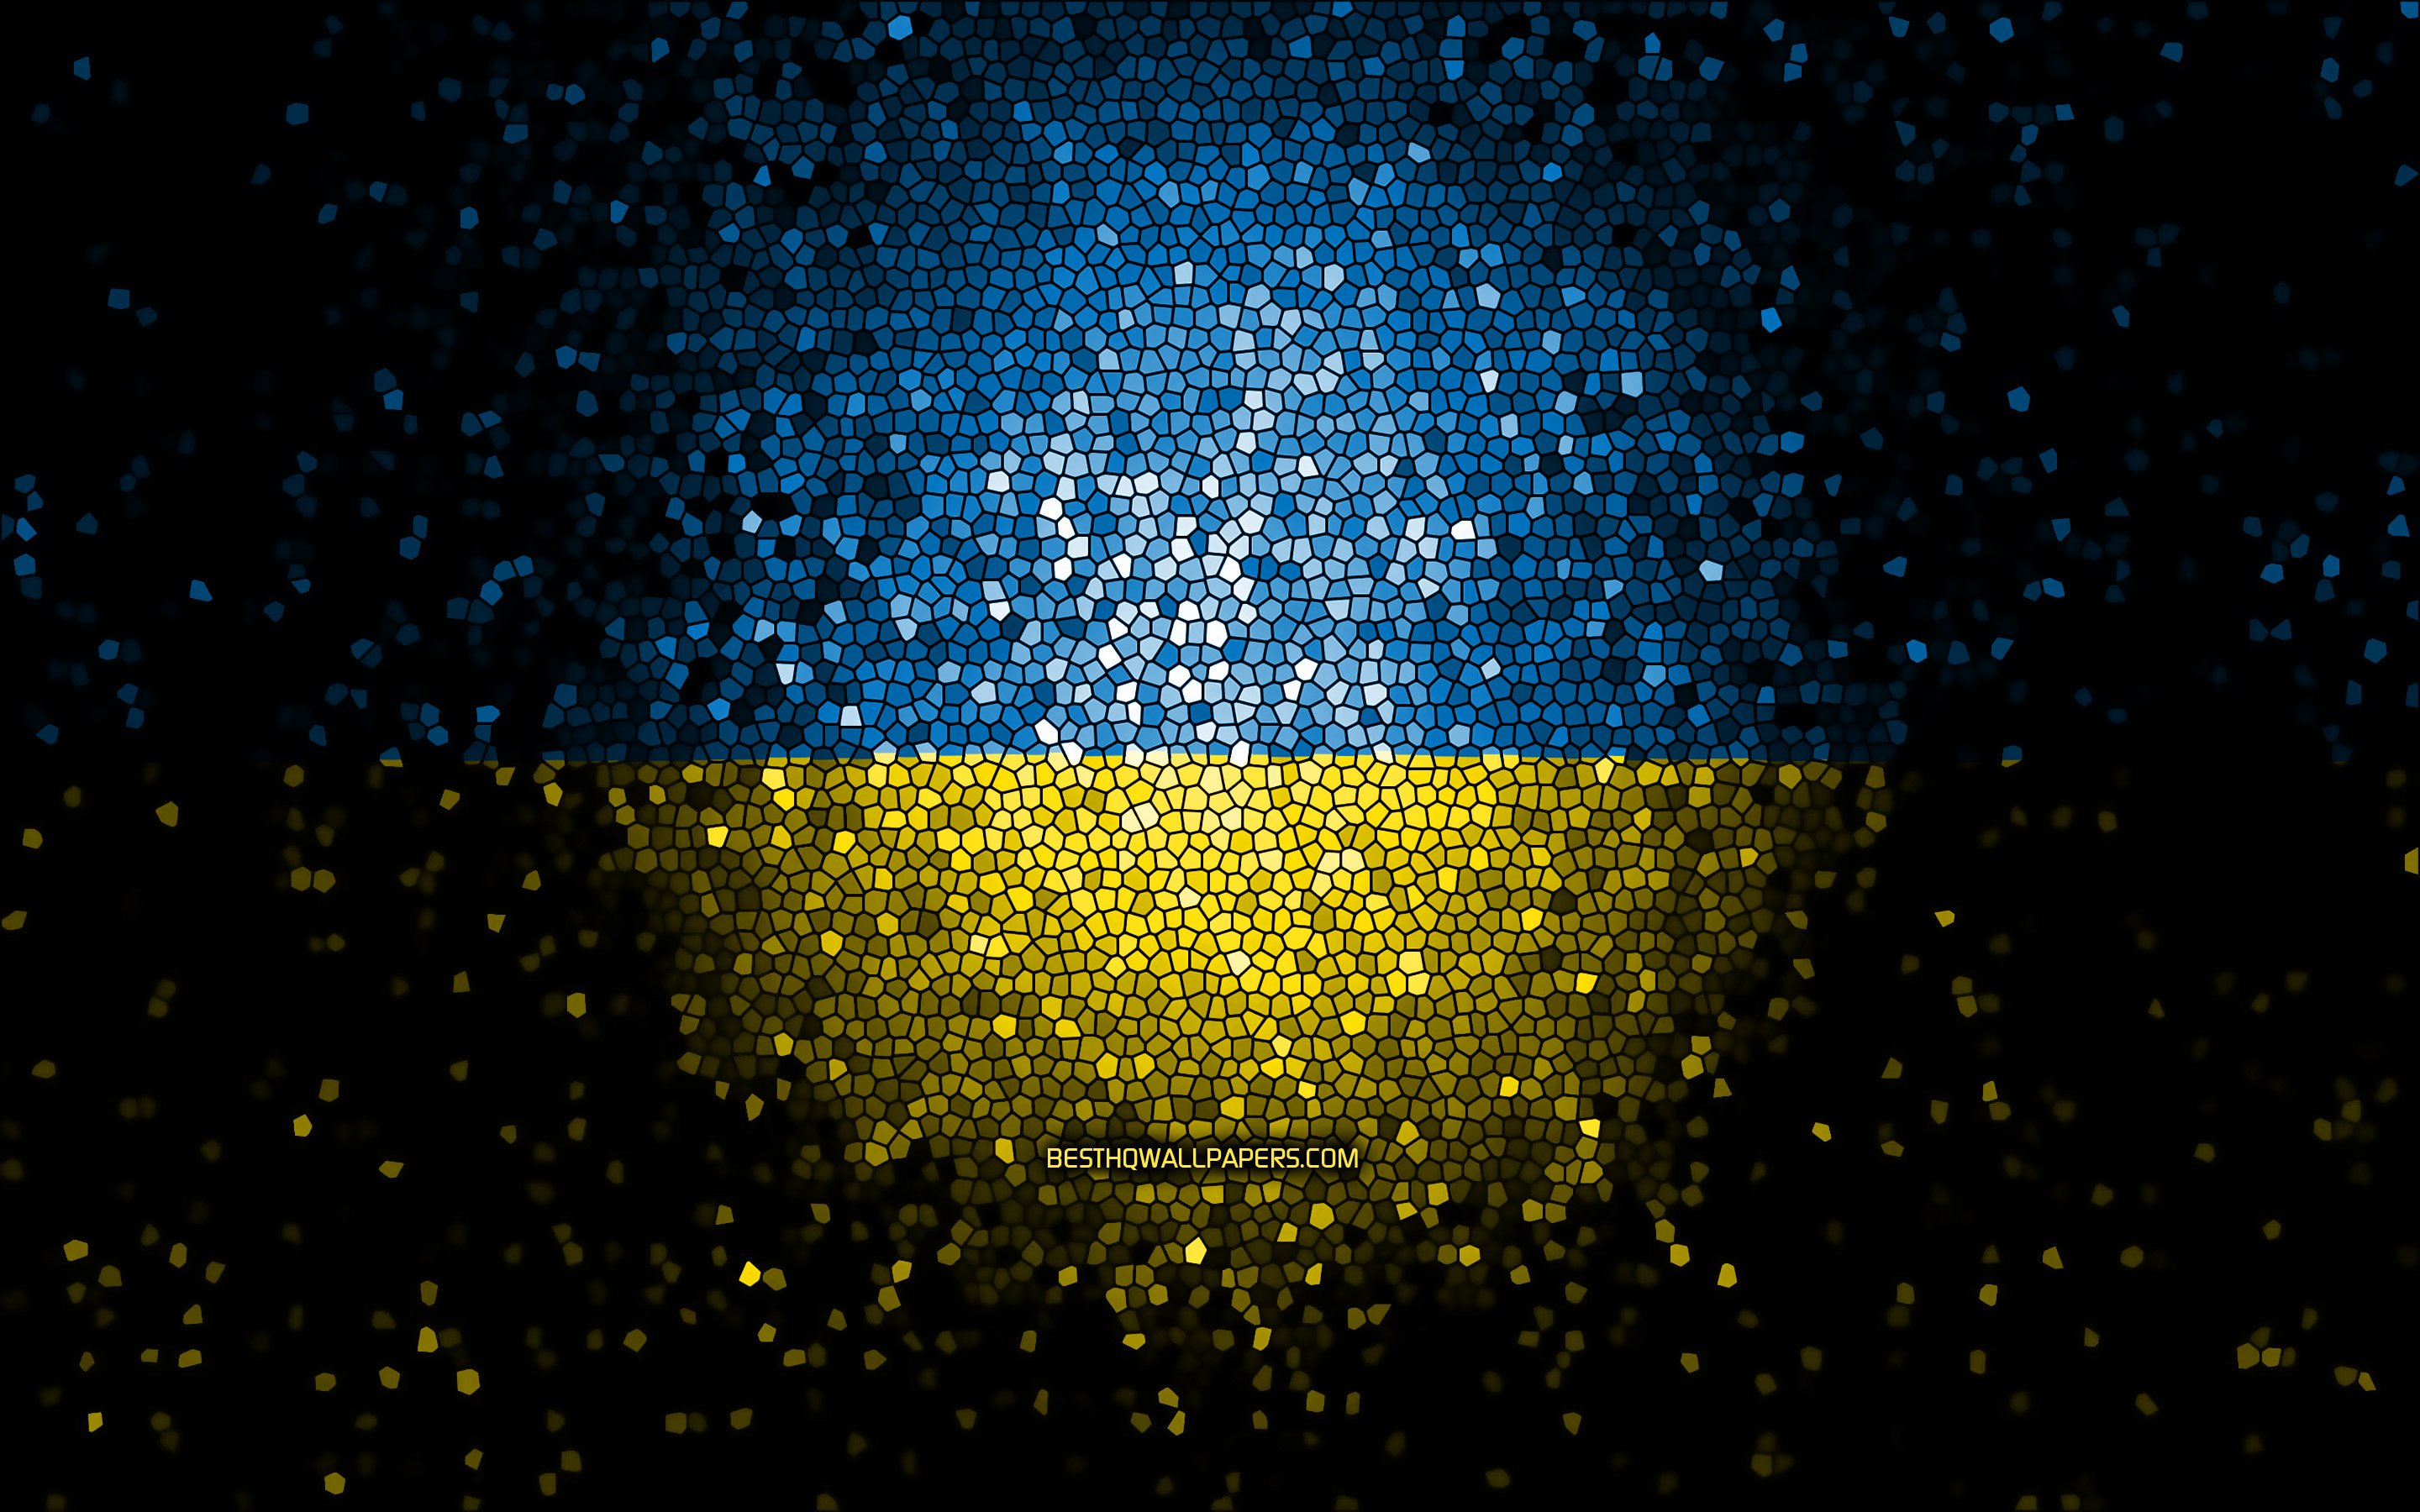 Theme with Ukraine flag httpsgalaxystoregUkr Static lock screen  wallpaper for Golden Ukraine by Volter theme My Theme  Ukraine Ukrainian  art Ukraine flag